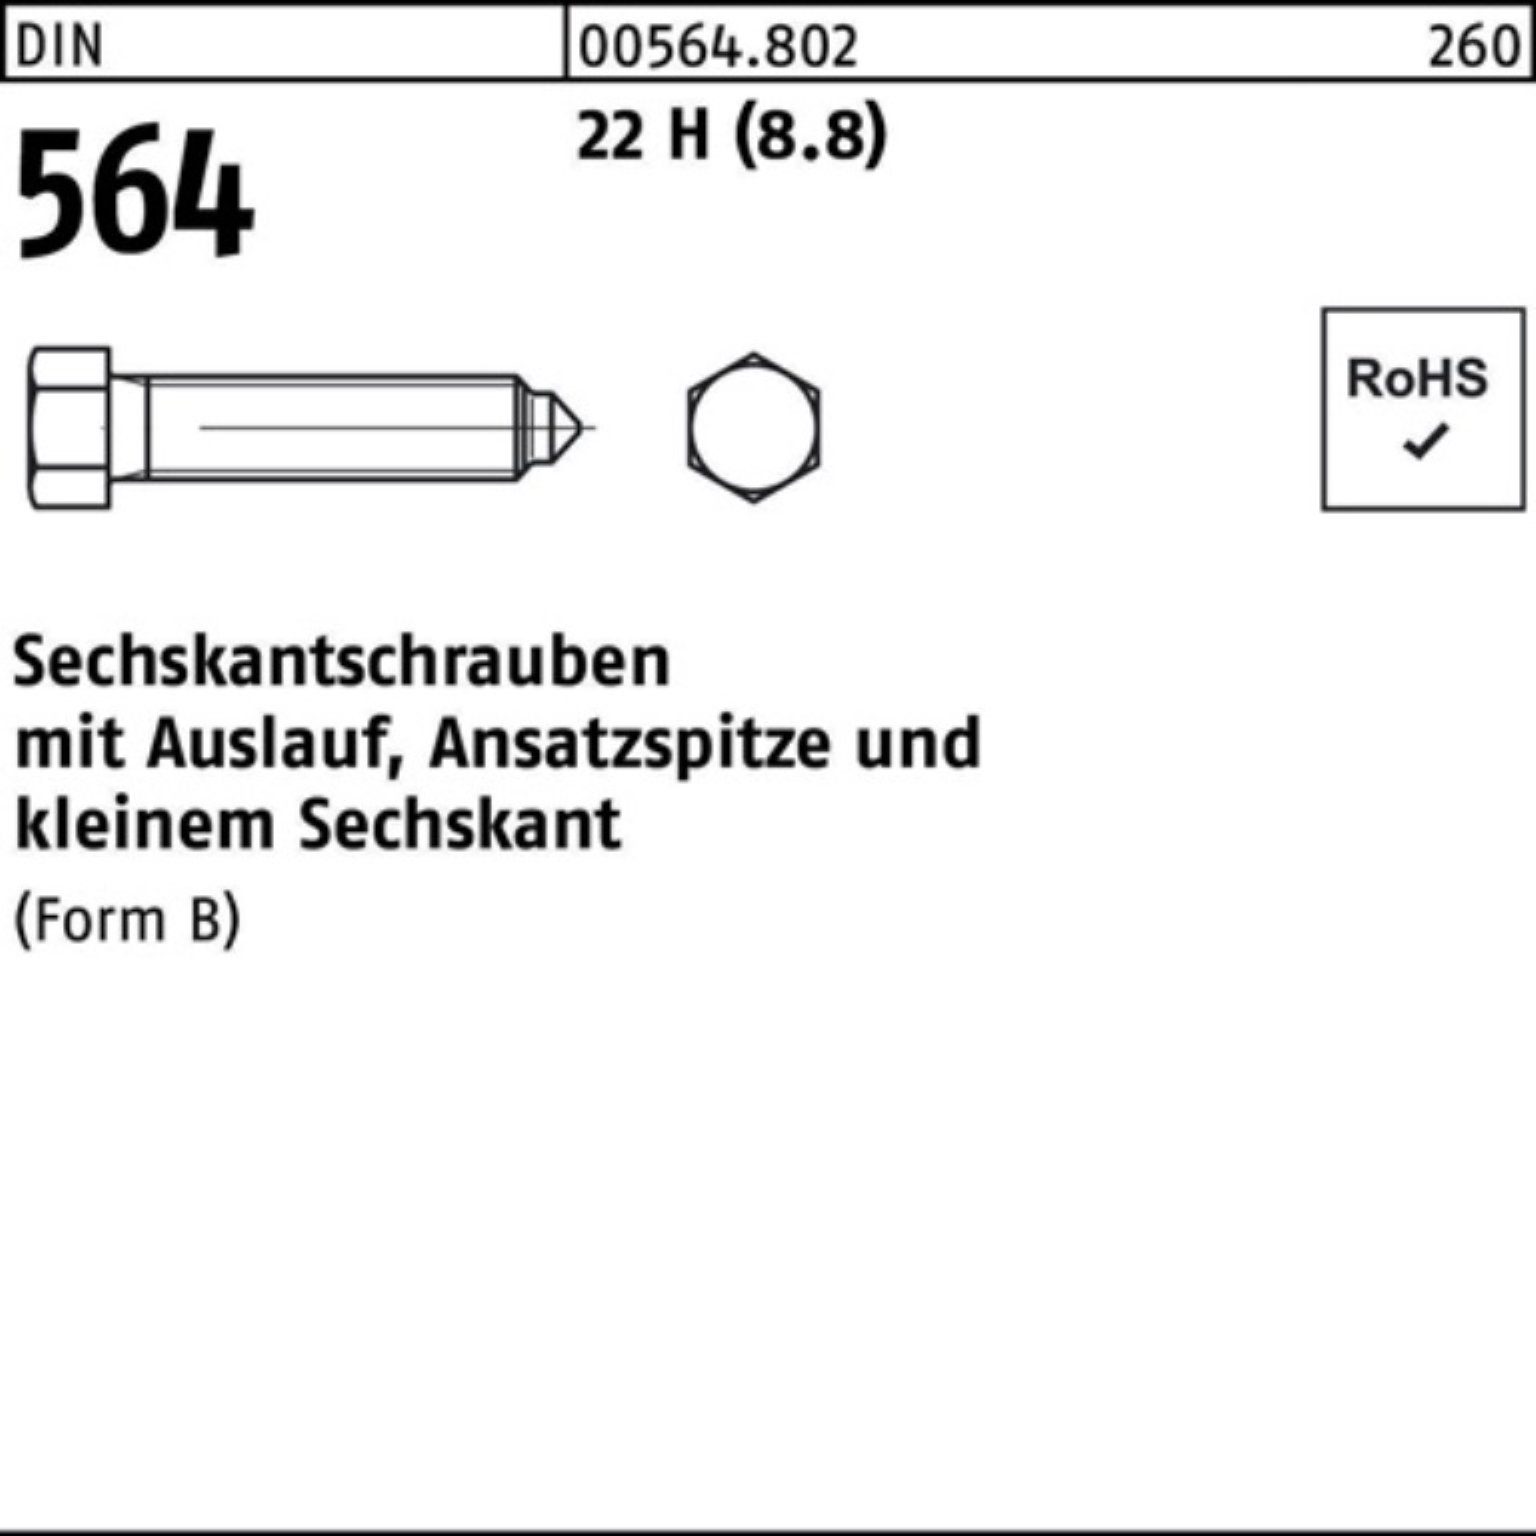 Reyher BM Sechskantschraube 60 24x DIN 100er Pack Ansatzspitze/Auslauf Sechskantschraube 22 564